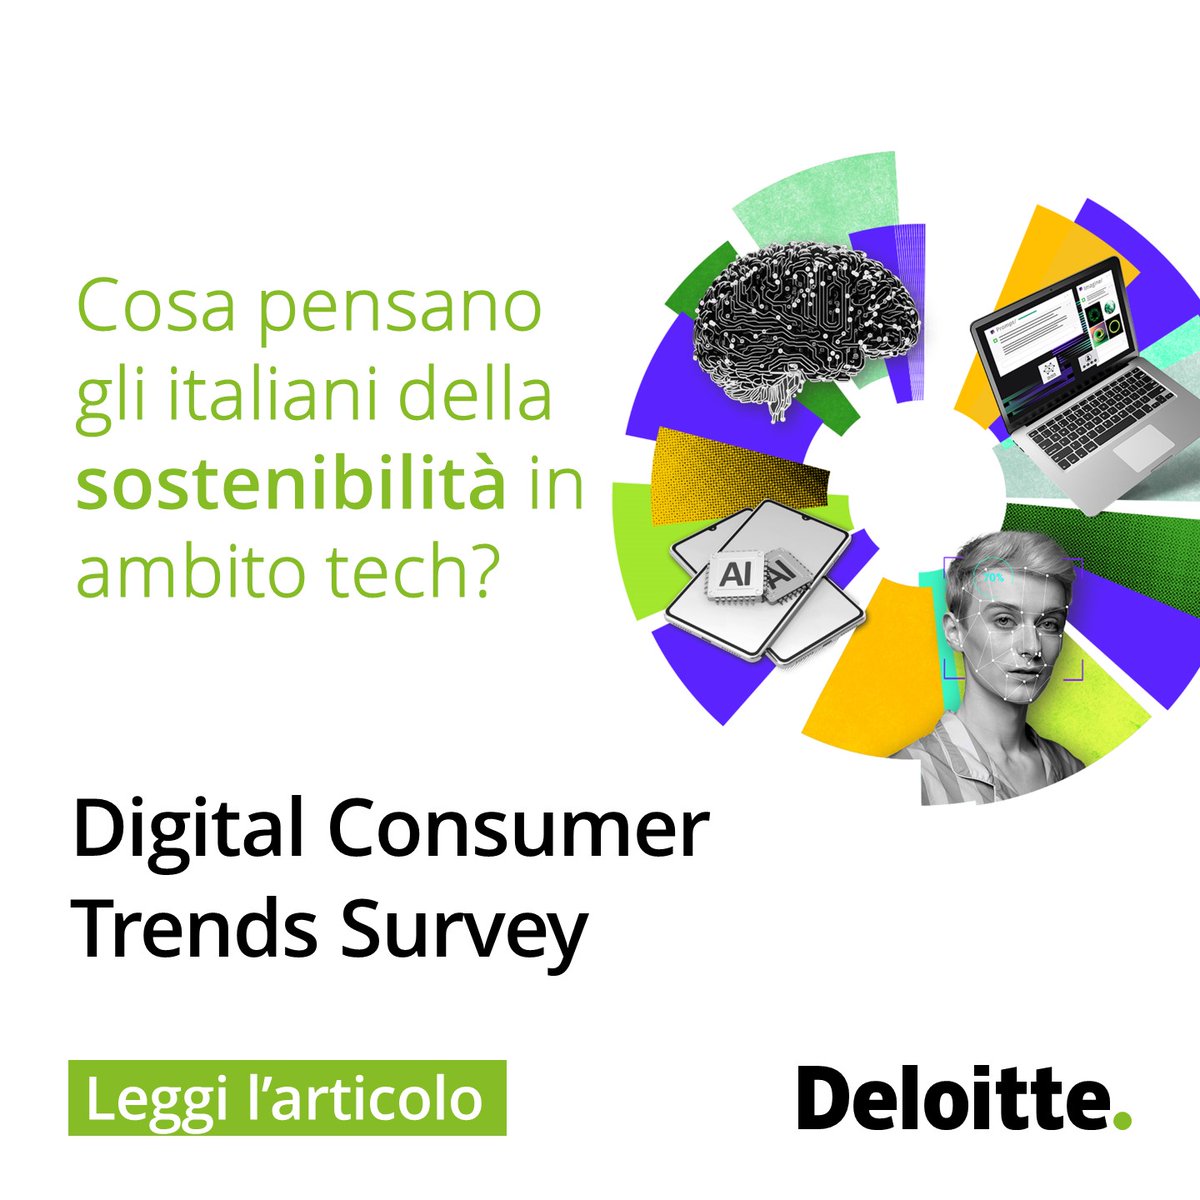 Dalla nuova Digital Consumer Trends Survey emerge che, nel confronto con altri Paesi europei, cresce l’attenzione degli italiani sui temi della sostenibilità in ambito tech. Scopri di più: deloi.tt/49XPUHo #DigitalConsumerTrends #DeloitteItalia